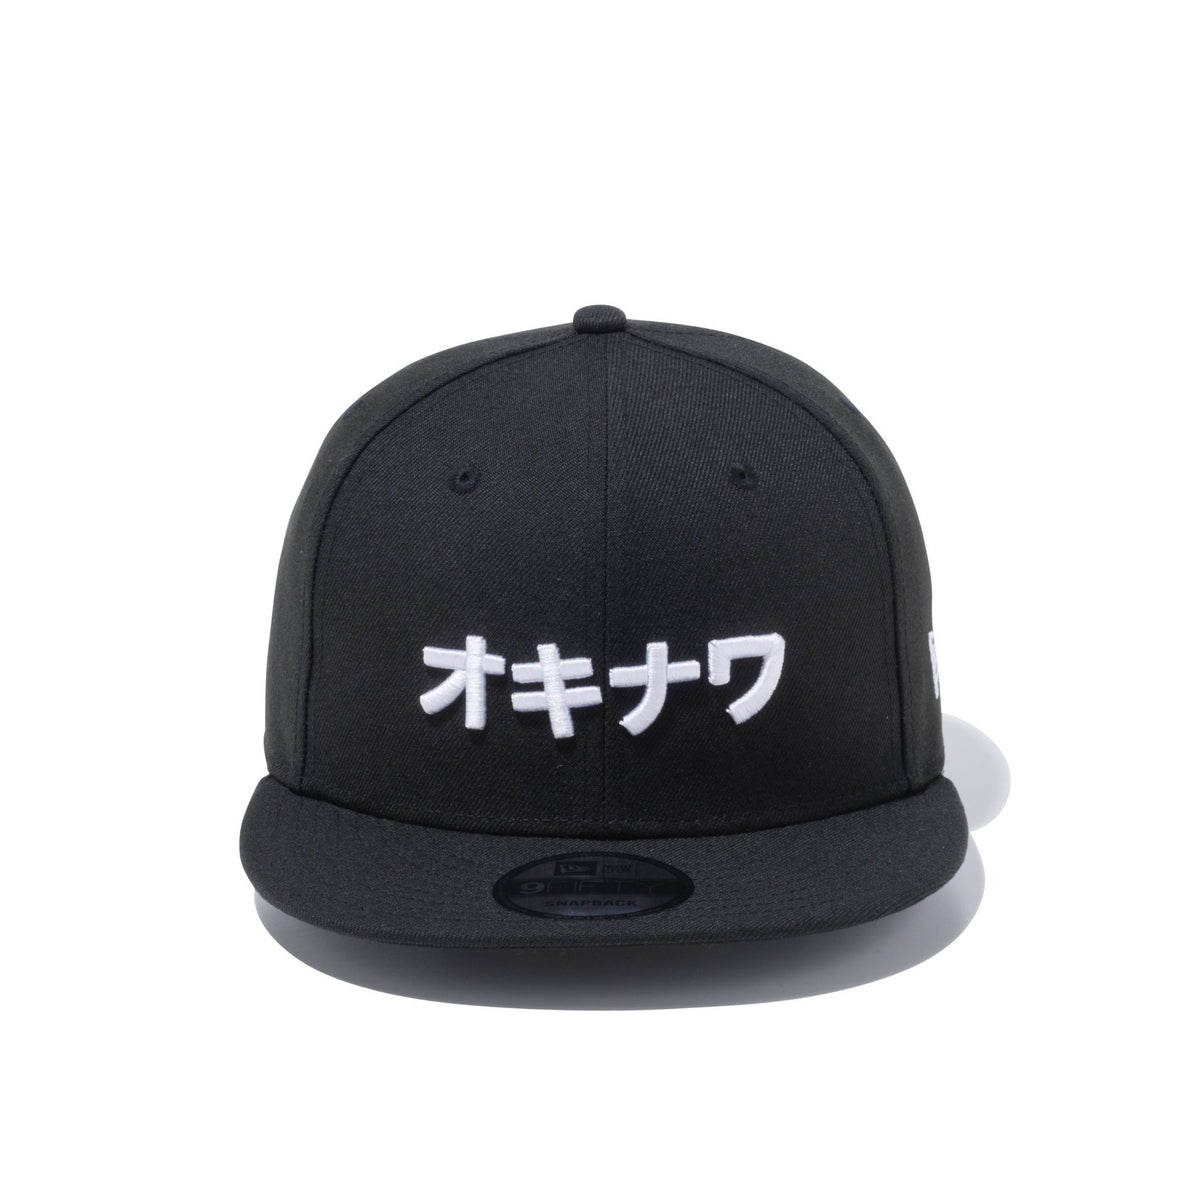 購入日本9FIFTY ダウンタウン New Era カタカナロゴ ブラック S/M 帽子